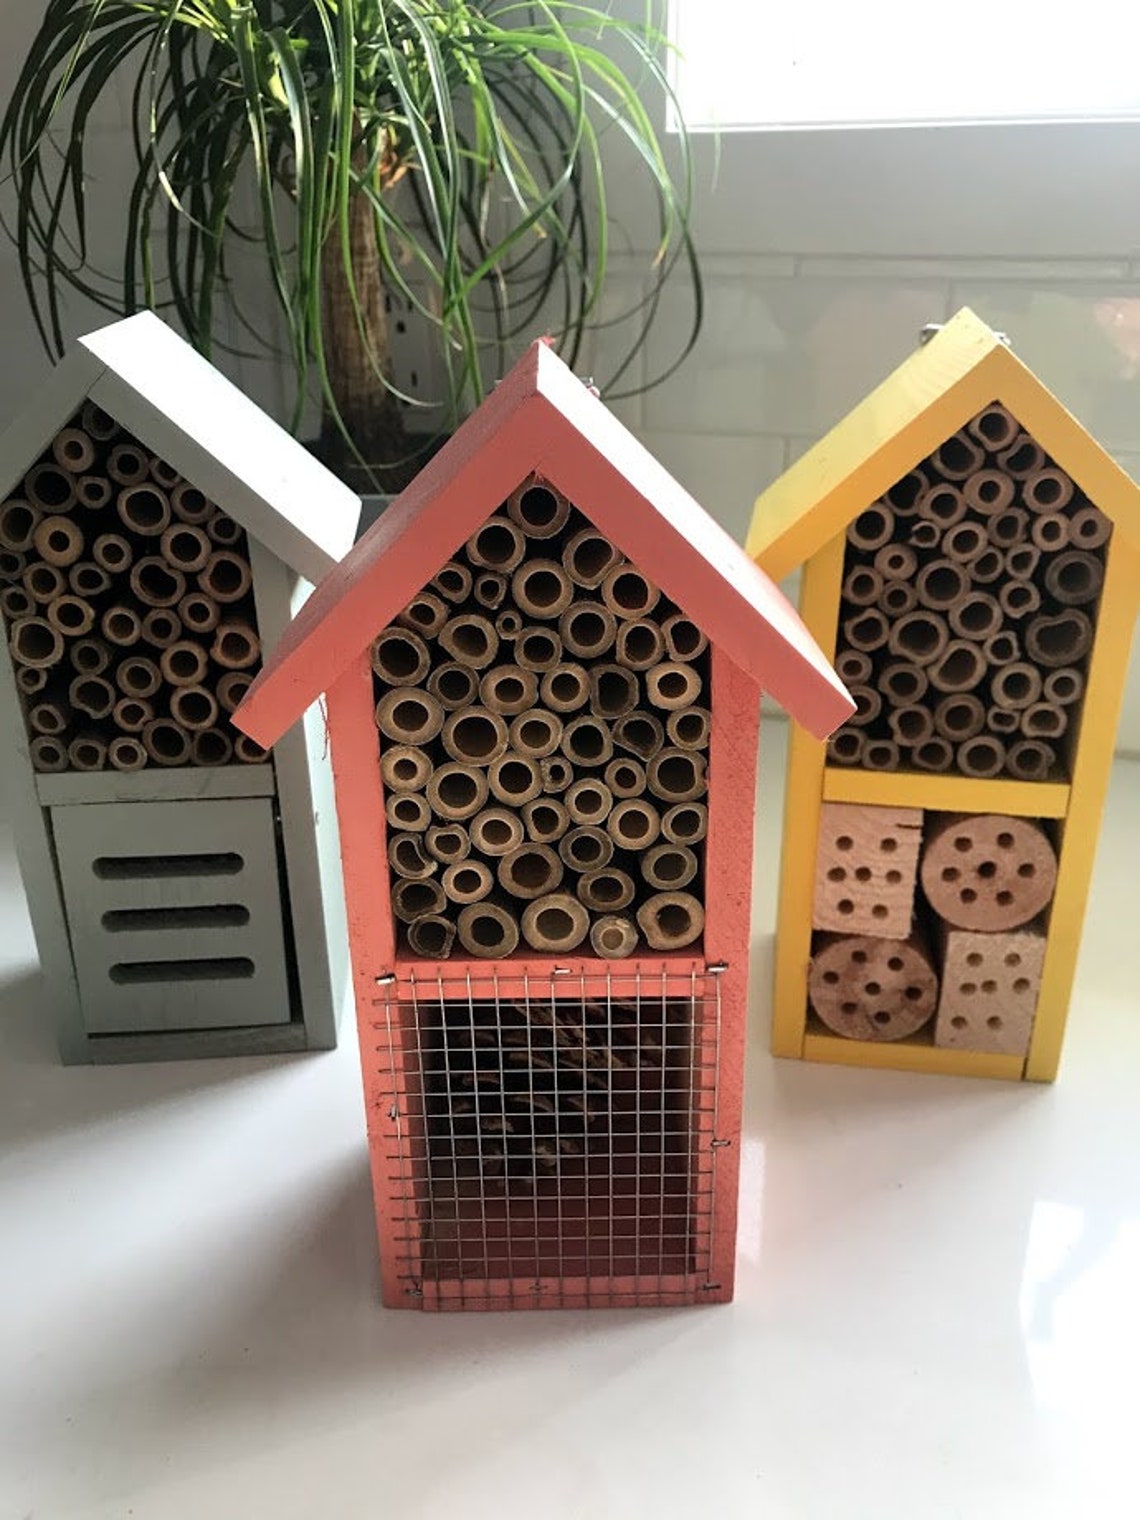 pollinator houses